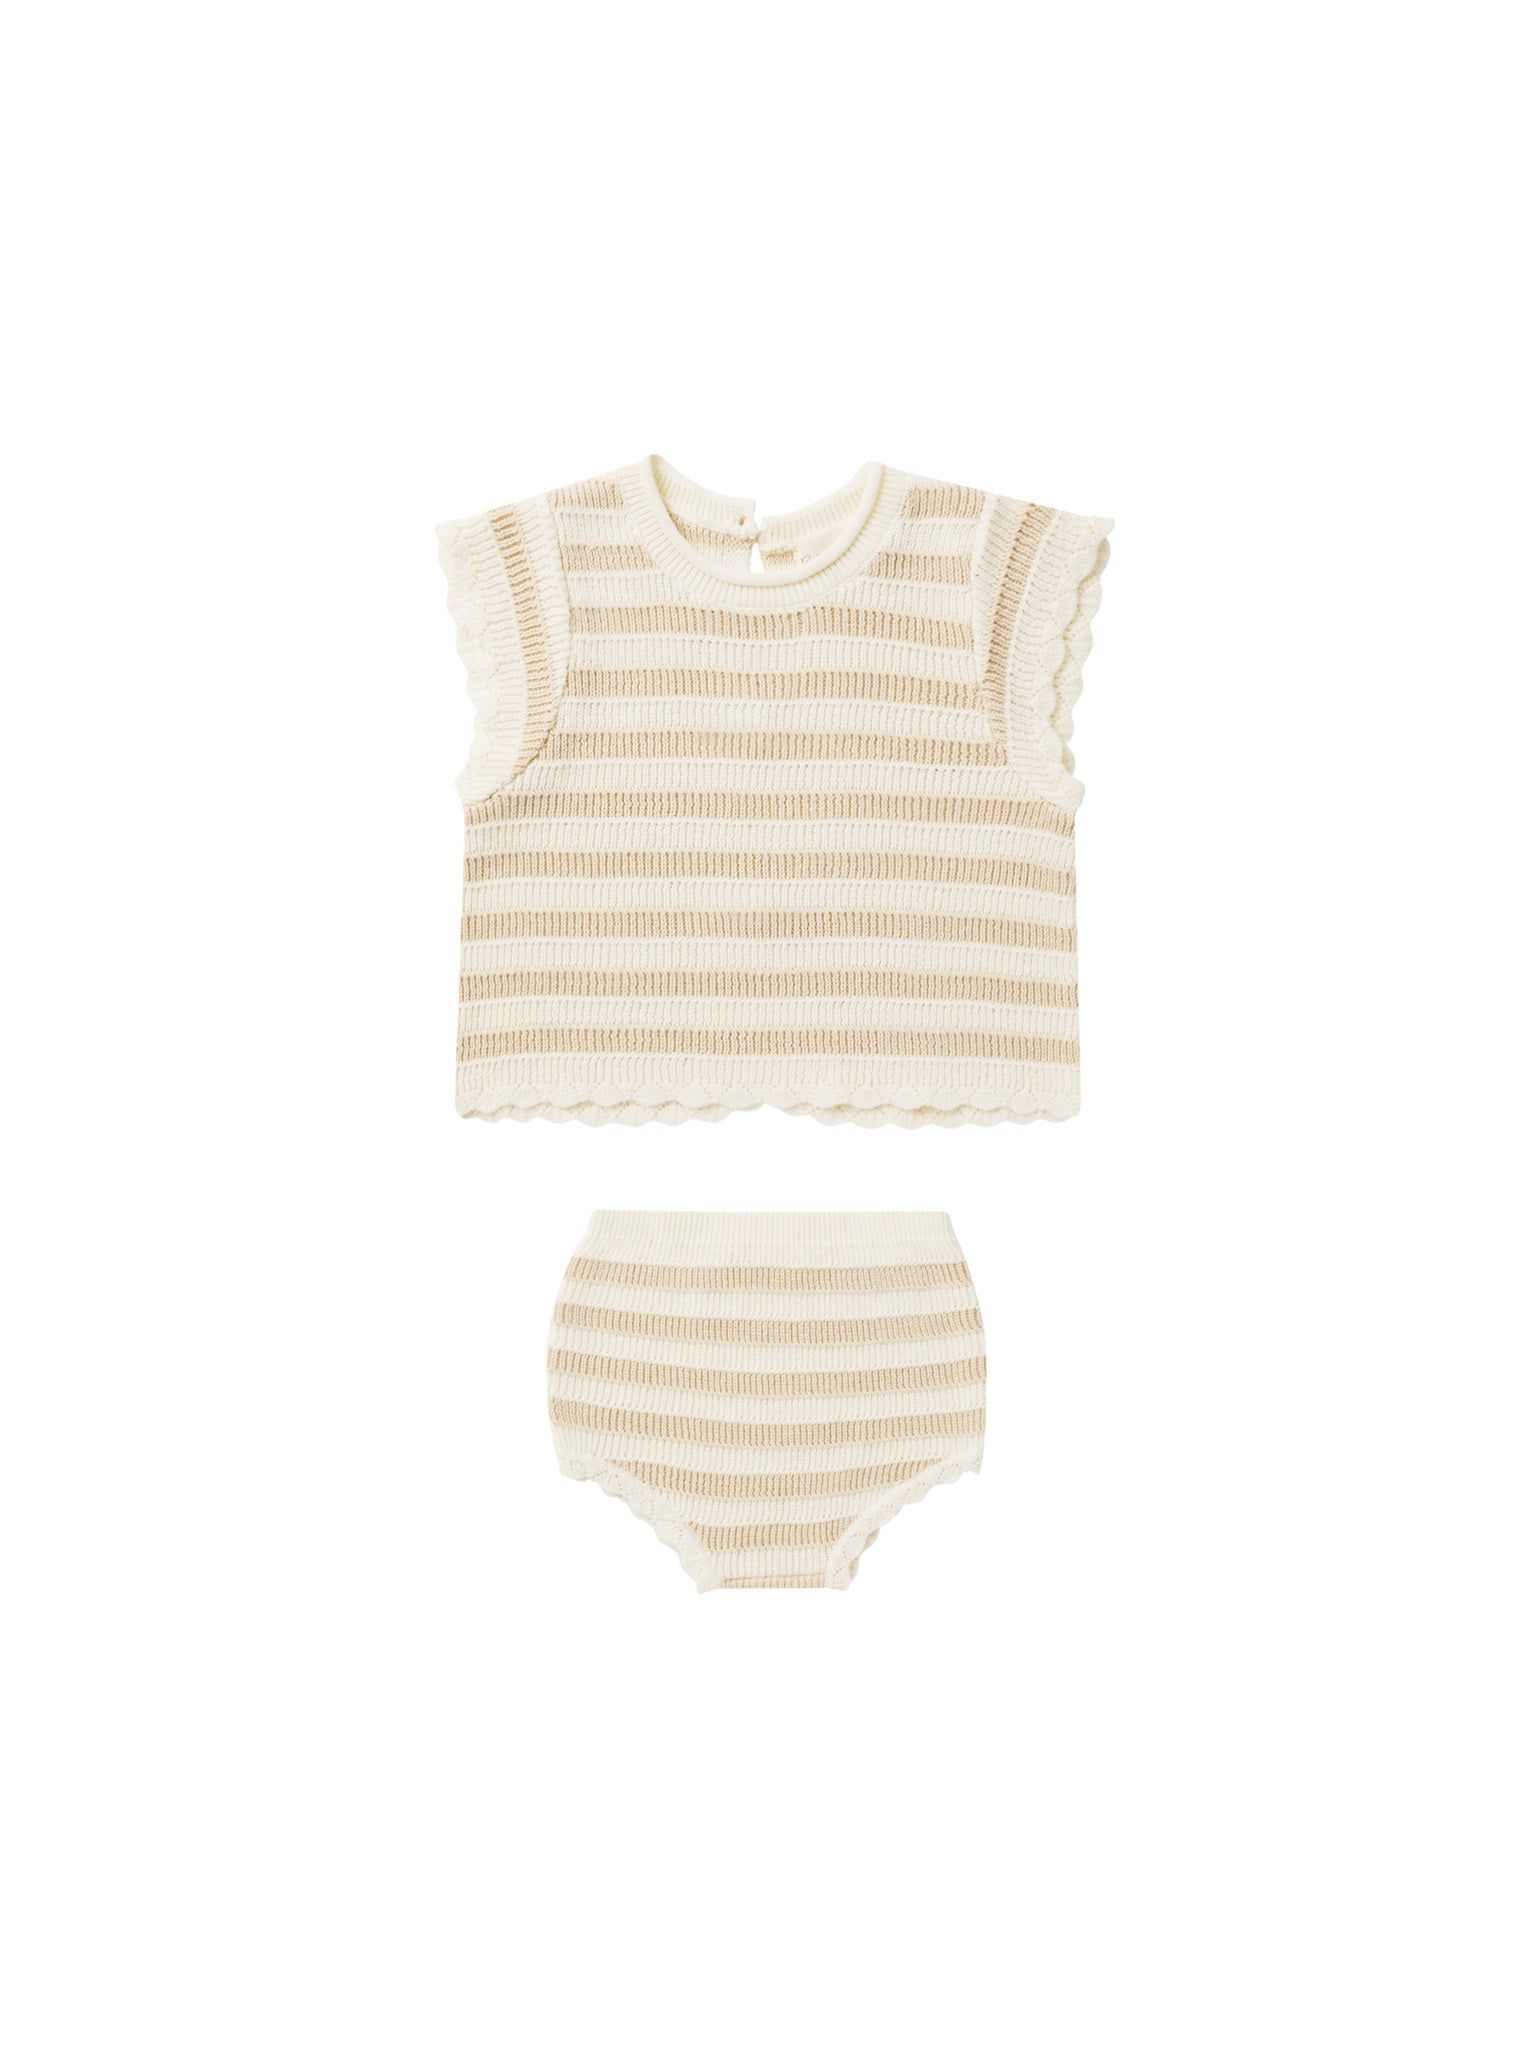 Scallop Knit Baby Set - Sand Stripe - Twinkle Twinkle Little One